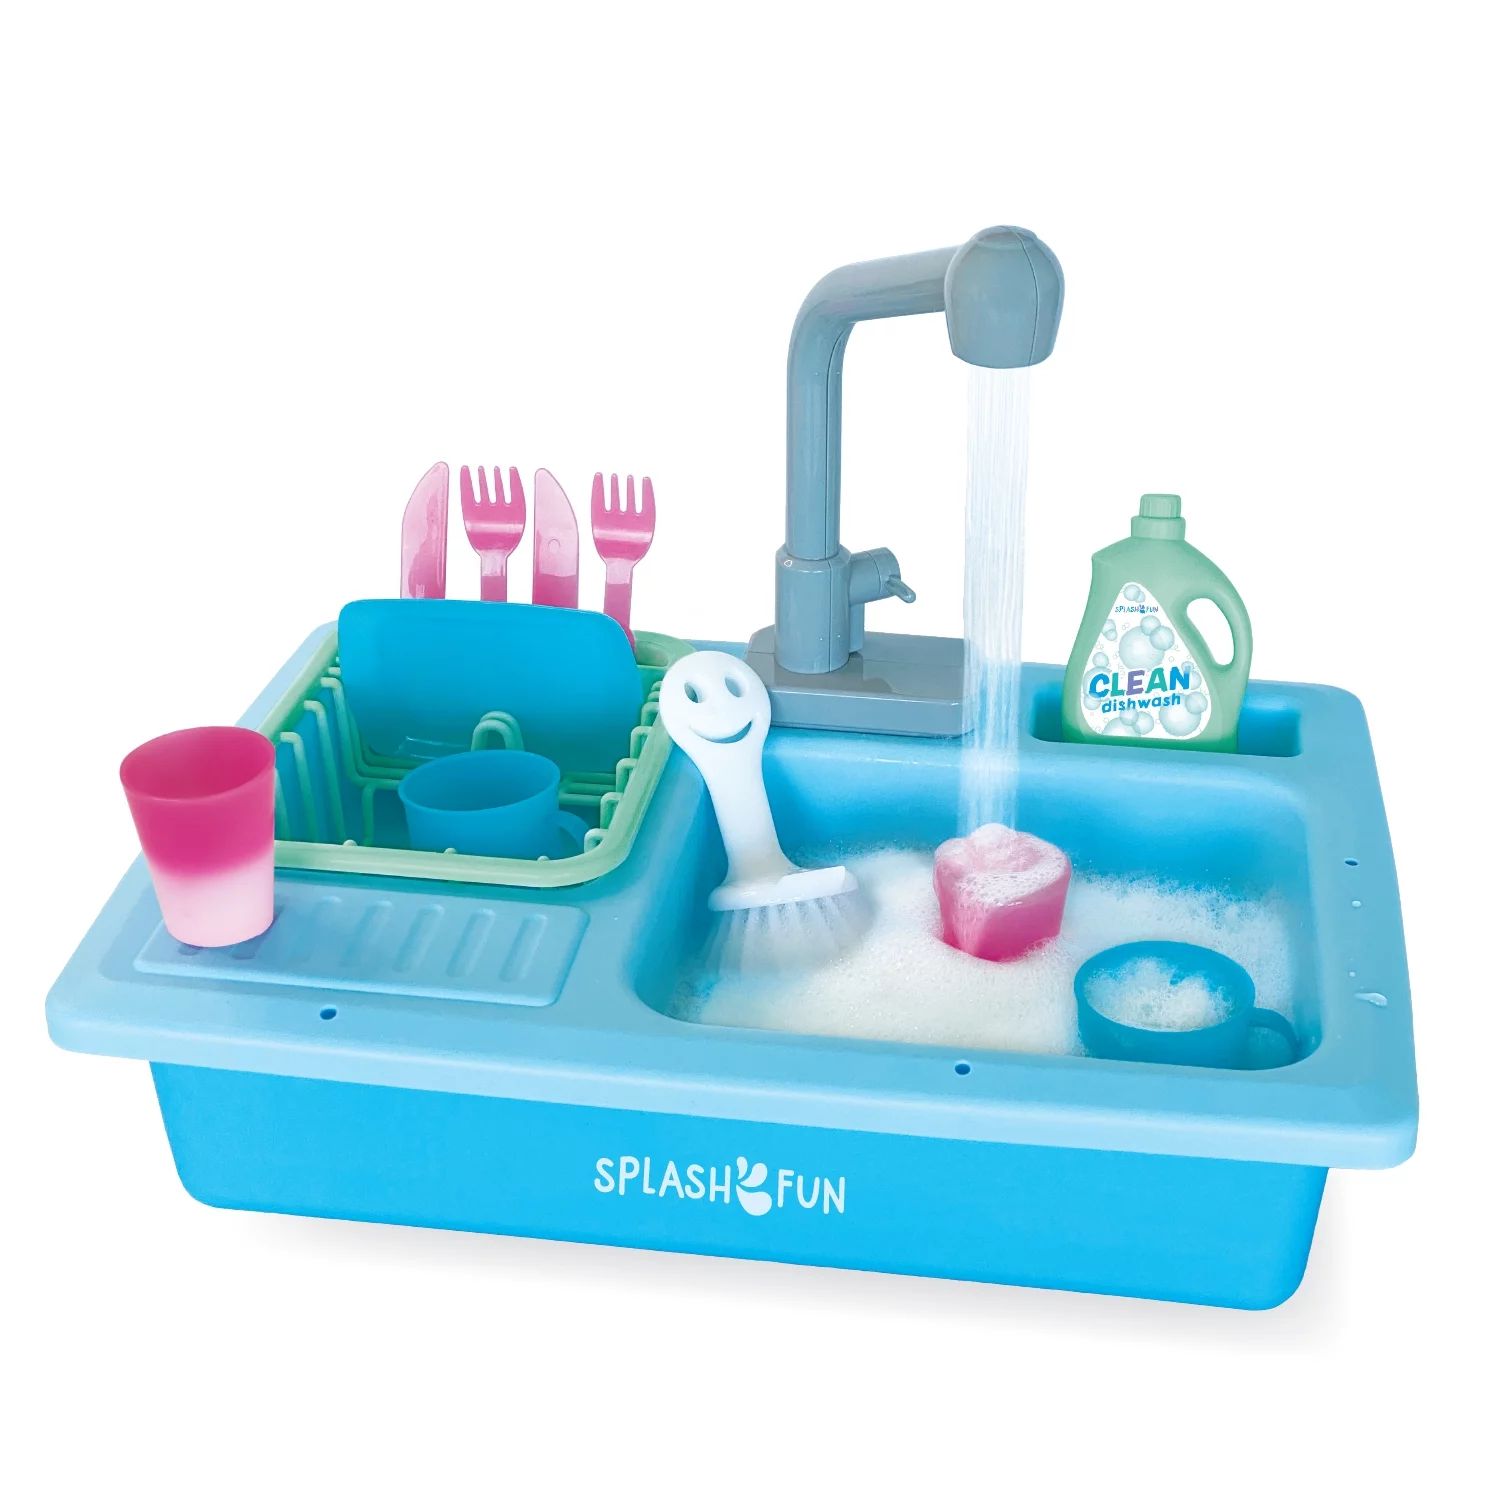 SPLASHFUN Wash-up Kitchen Sink Play Set with Running Water Pretend Play Kitchen Toy Set with Work... | Walmart (US)